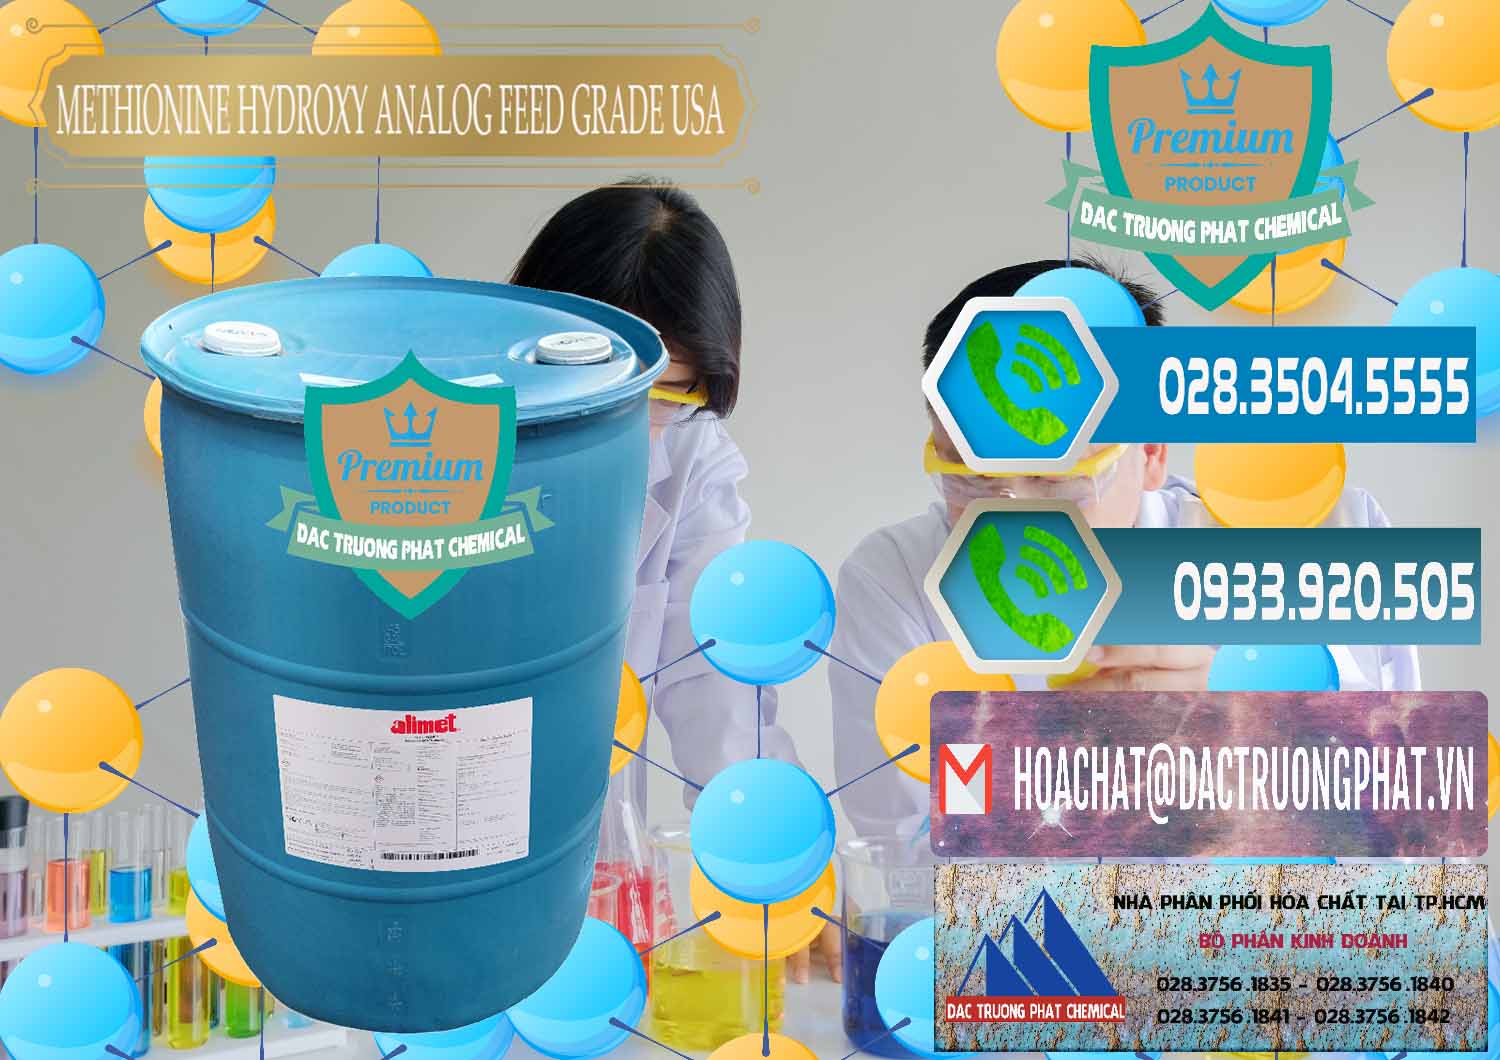 Đơn vị chuyên nhập khẩu - bán Methionine Nước - Dạng Lỏng Novus Alimet Mỹ USA - 0316 - Nơi chuyên bán - phân phối hóa chất tại TP.HCM - congtyhoachat.net